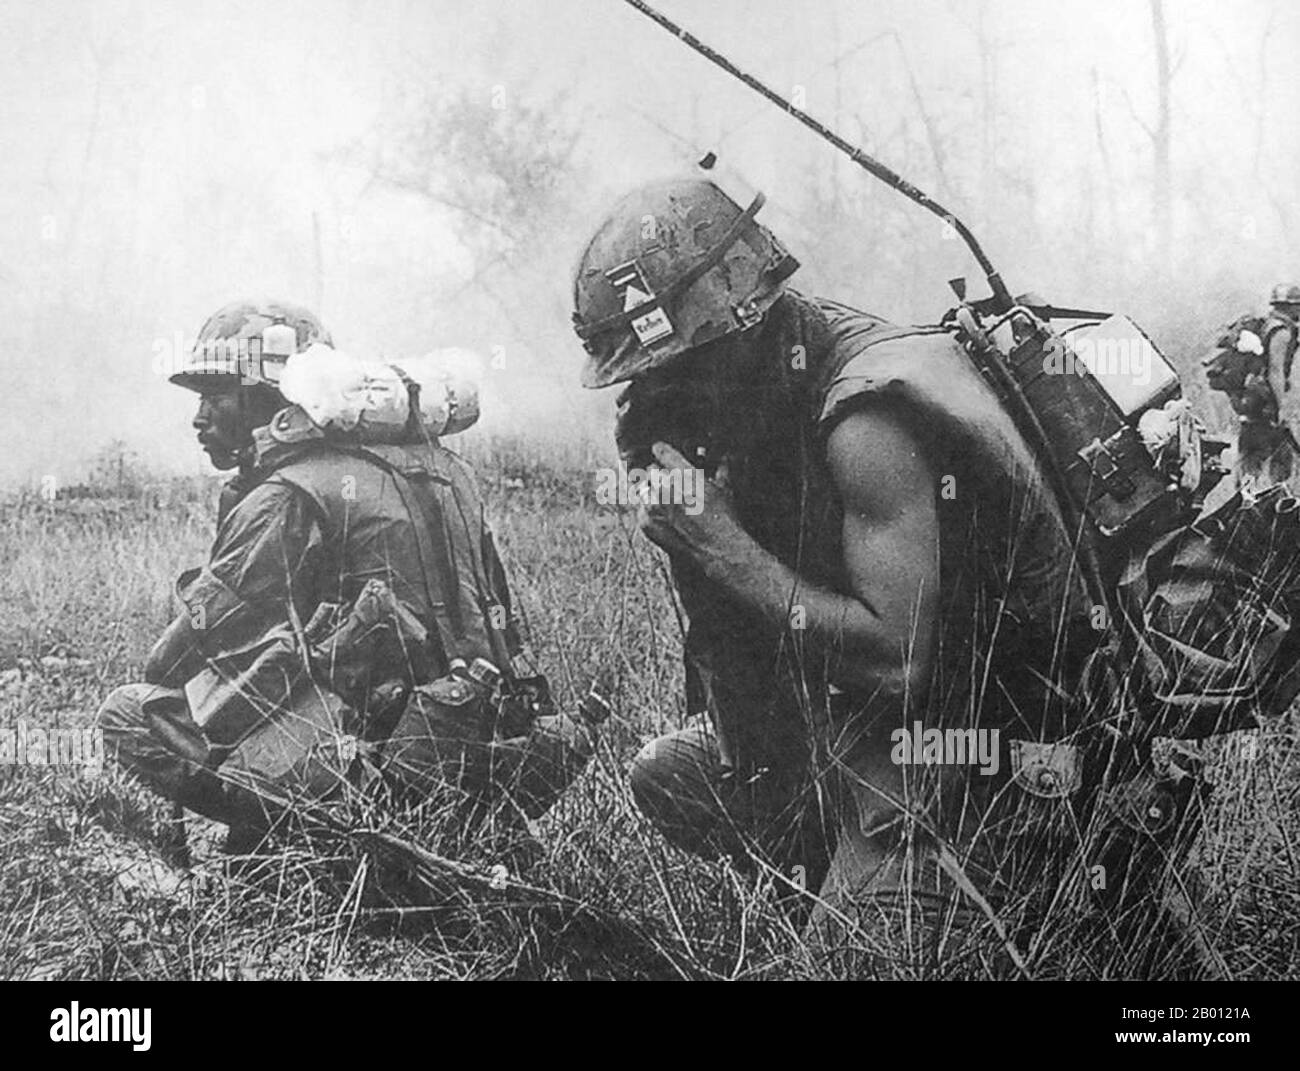 Vietnam: SOLDATEN DER US-Armee sind während der Tet-Offensive 1968 in Hue, Zentralvietnam, im Einsatz. Die Tet-Offensive war eine militärische Kampagne während des Vietnamkrieges, die am 31. Januar 1968 begann. Regelmäßige und unregelmäßige Streitkräfte der Volksarmee Vietnams sowie Widerstandskämpfer des NLF (Viet Cong) kämpften gegen die Streitkräfte der Republik Vietnam (Südvietnam), der Vereinigten Staaten und ihrer Verbündeten. Ziel der Offensive war es, militärische und zivile Kommandozentralen und Kontrollzentren in ganz Südvietnam zu schlagen und einen allgemeinen Aufstand unter der Bevölkerung zu entfachen. Stockfoto